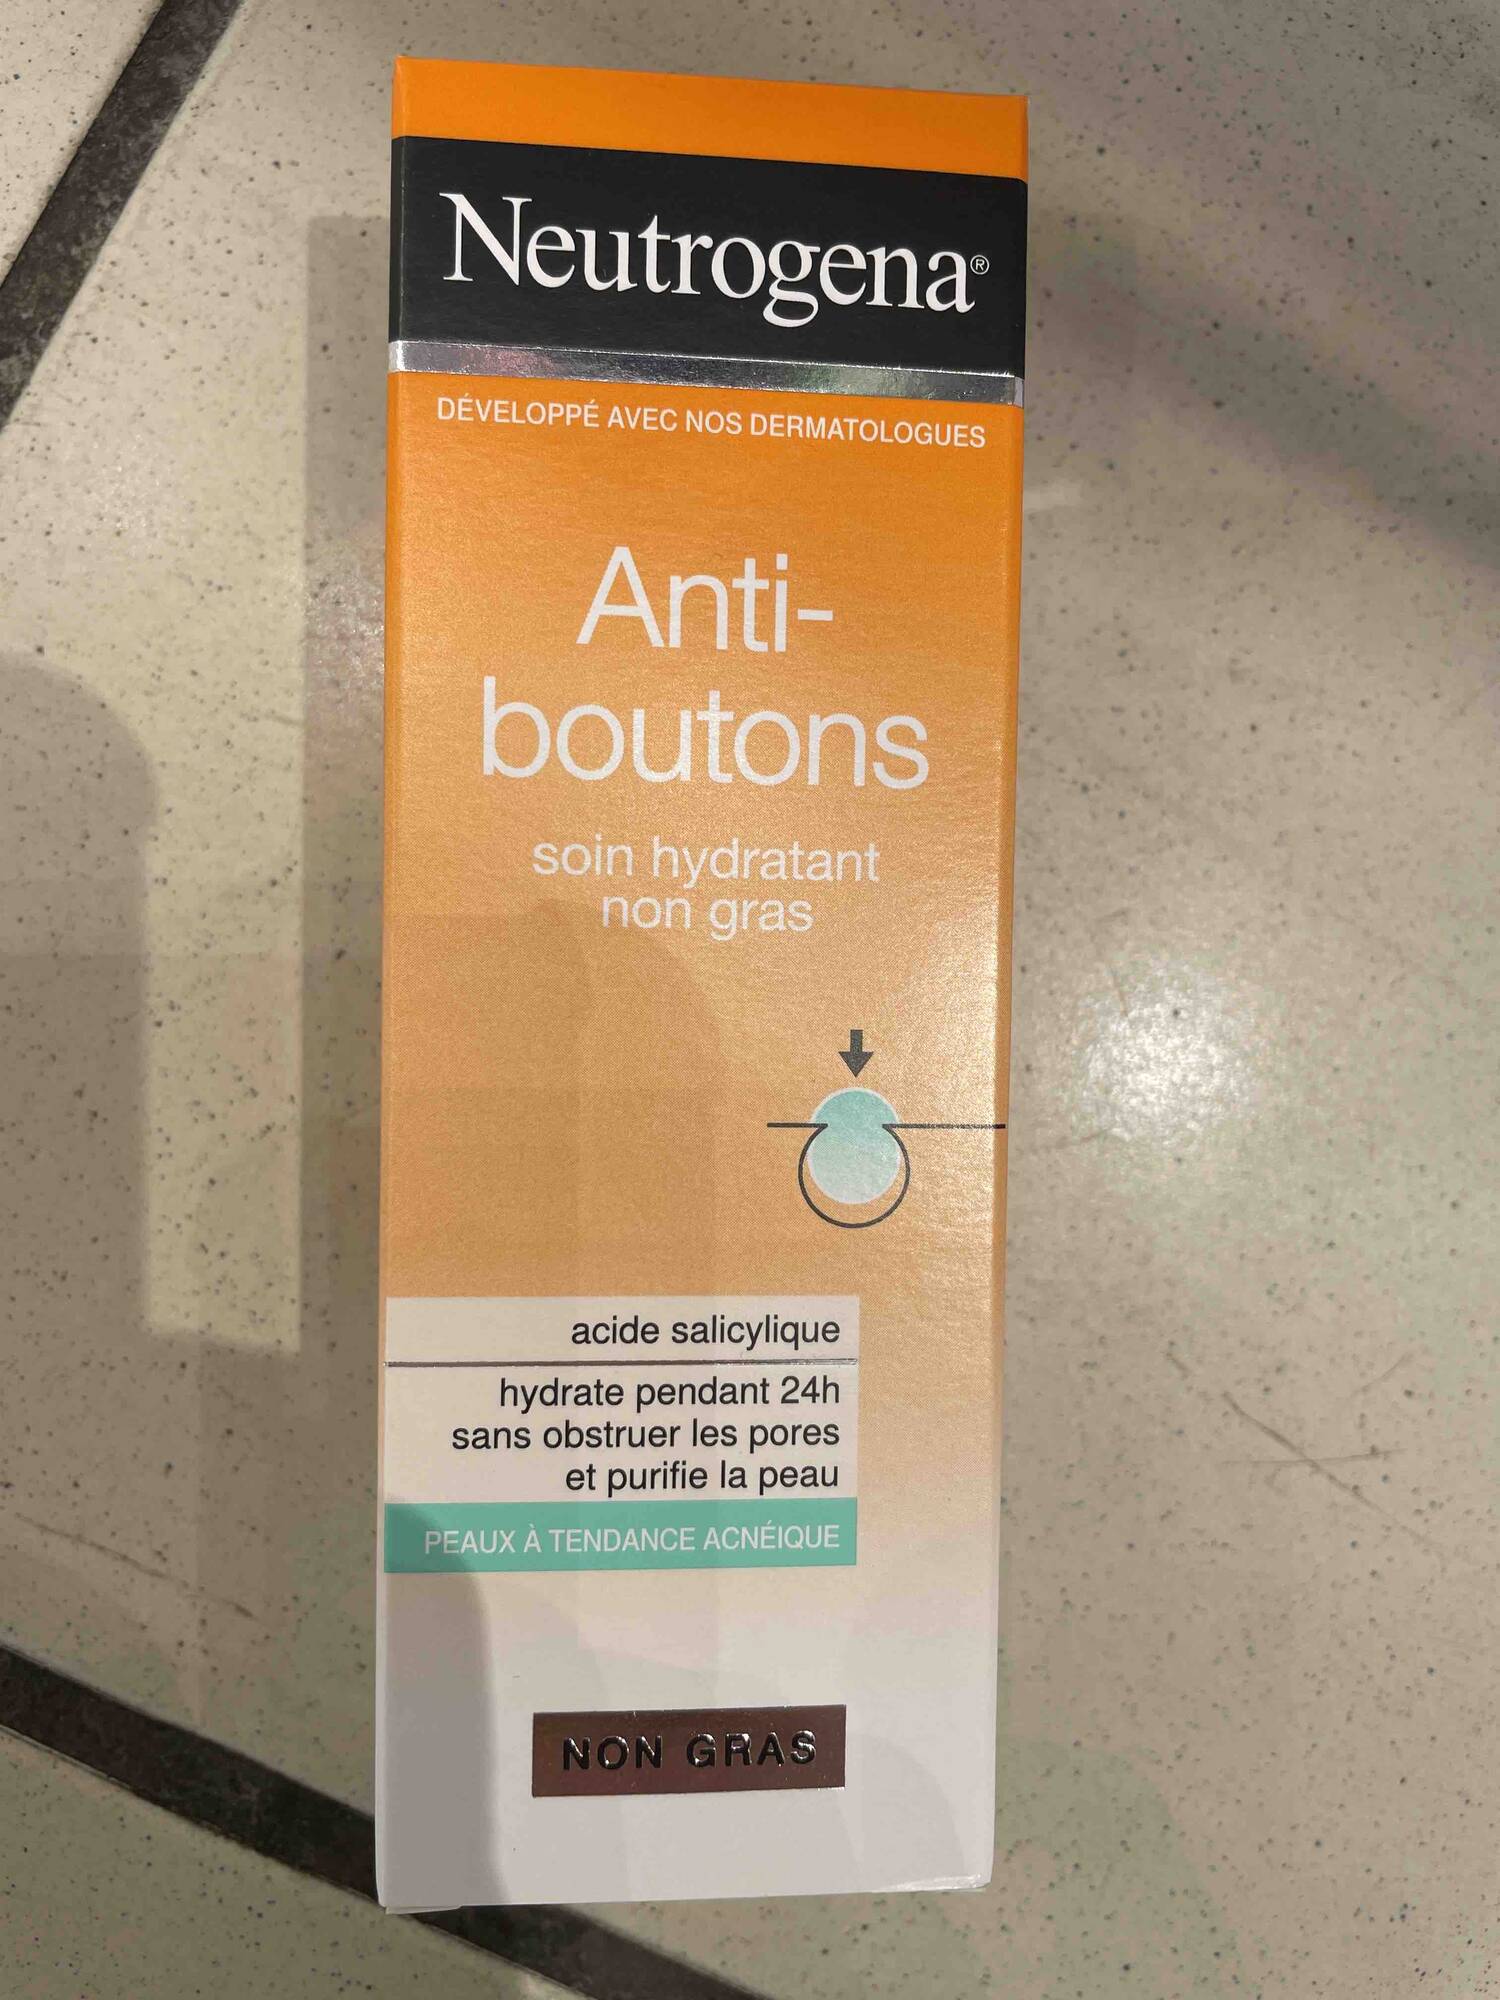 Neutrogena® Anti-boutons Soin Hydratant Non Gras